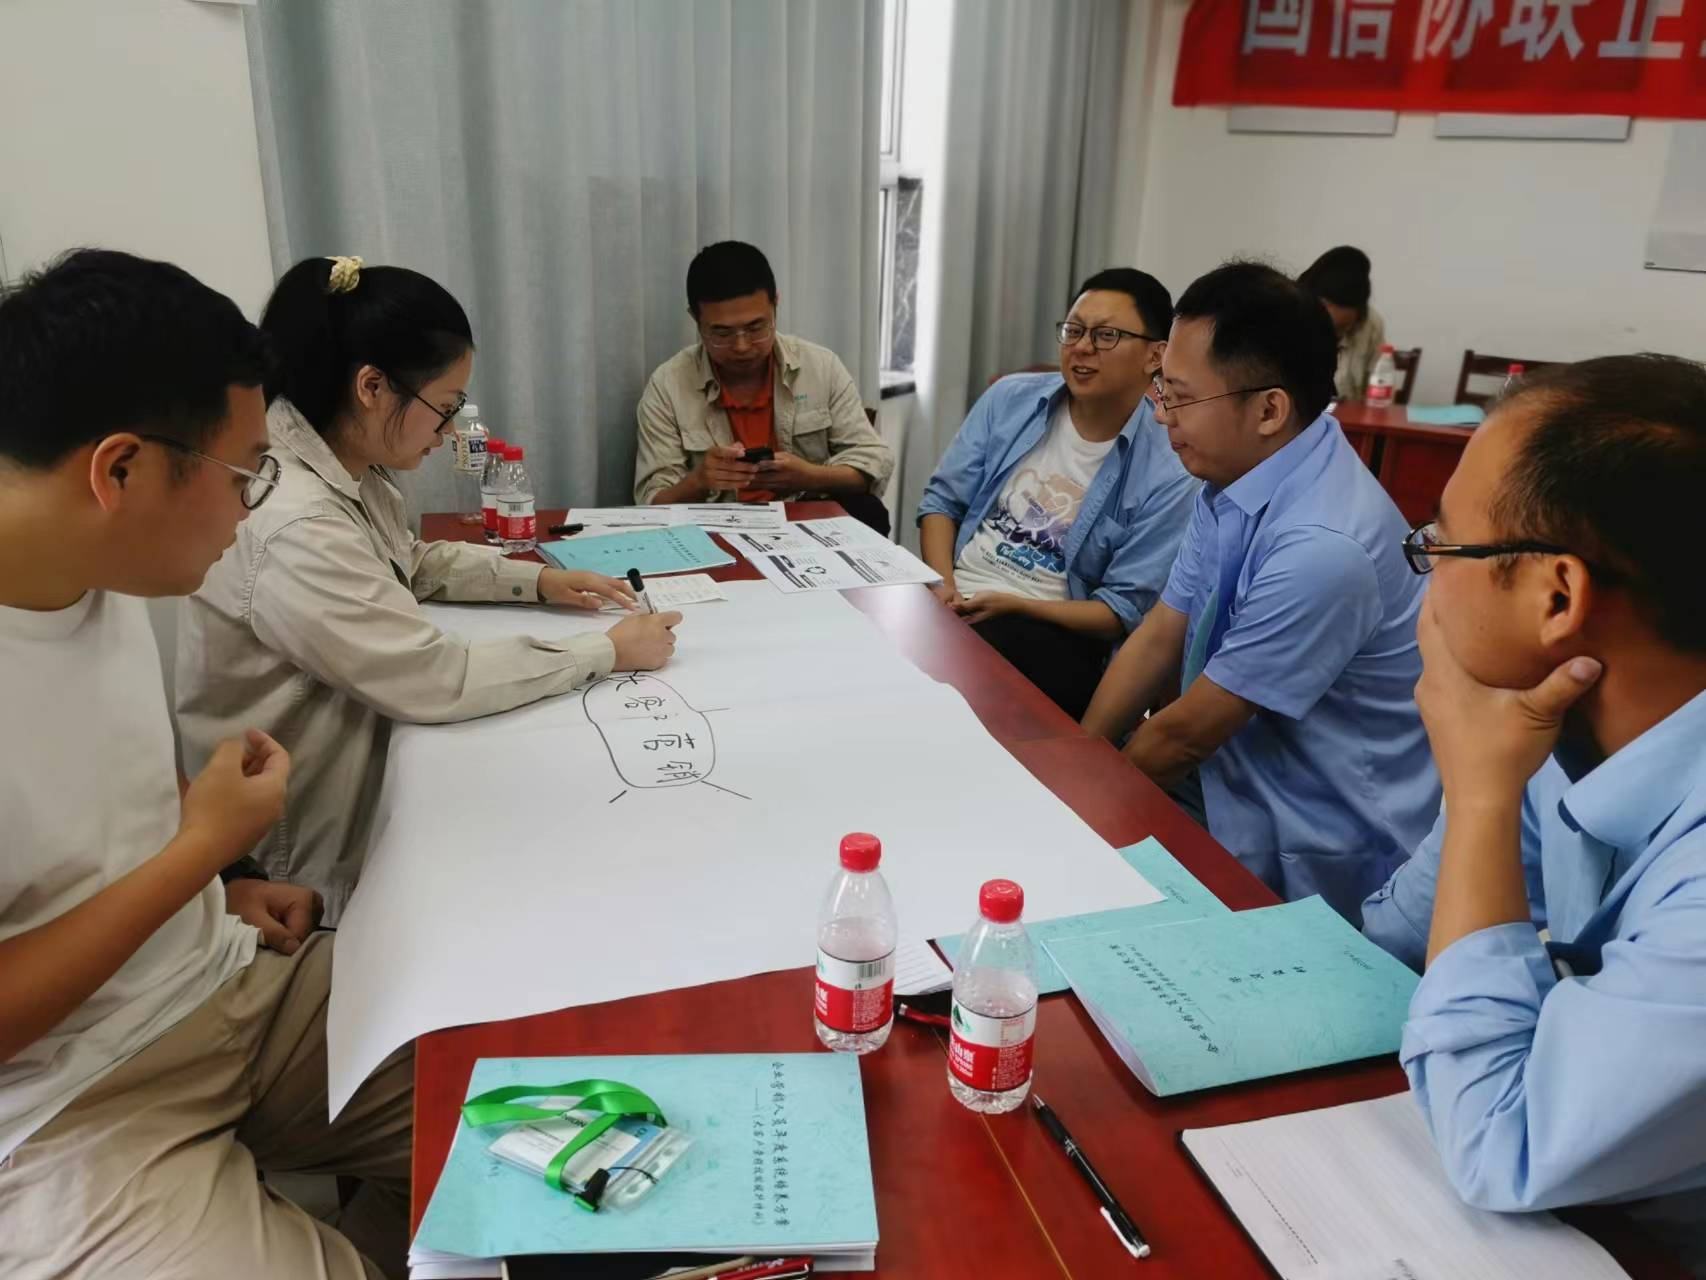 2022年6月24-25号邓波老师为江苏某企业分享《大客户开发管理》